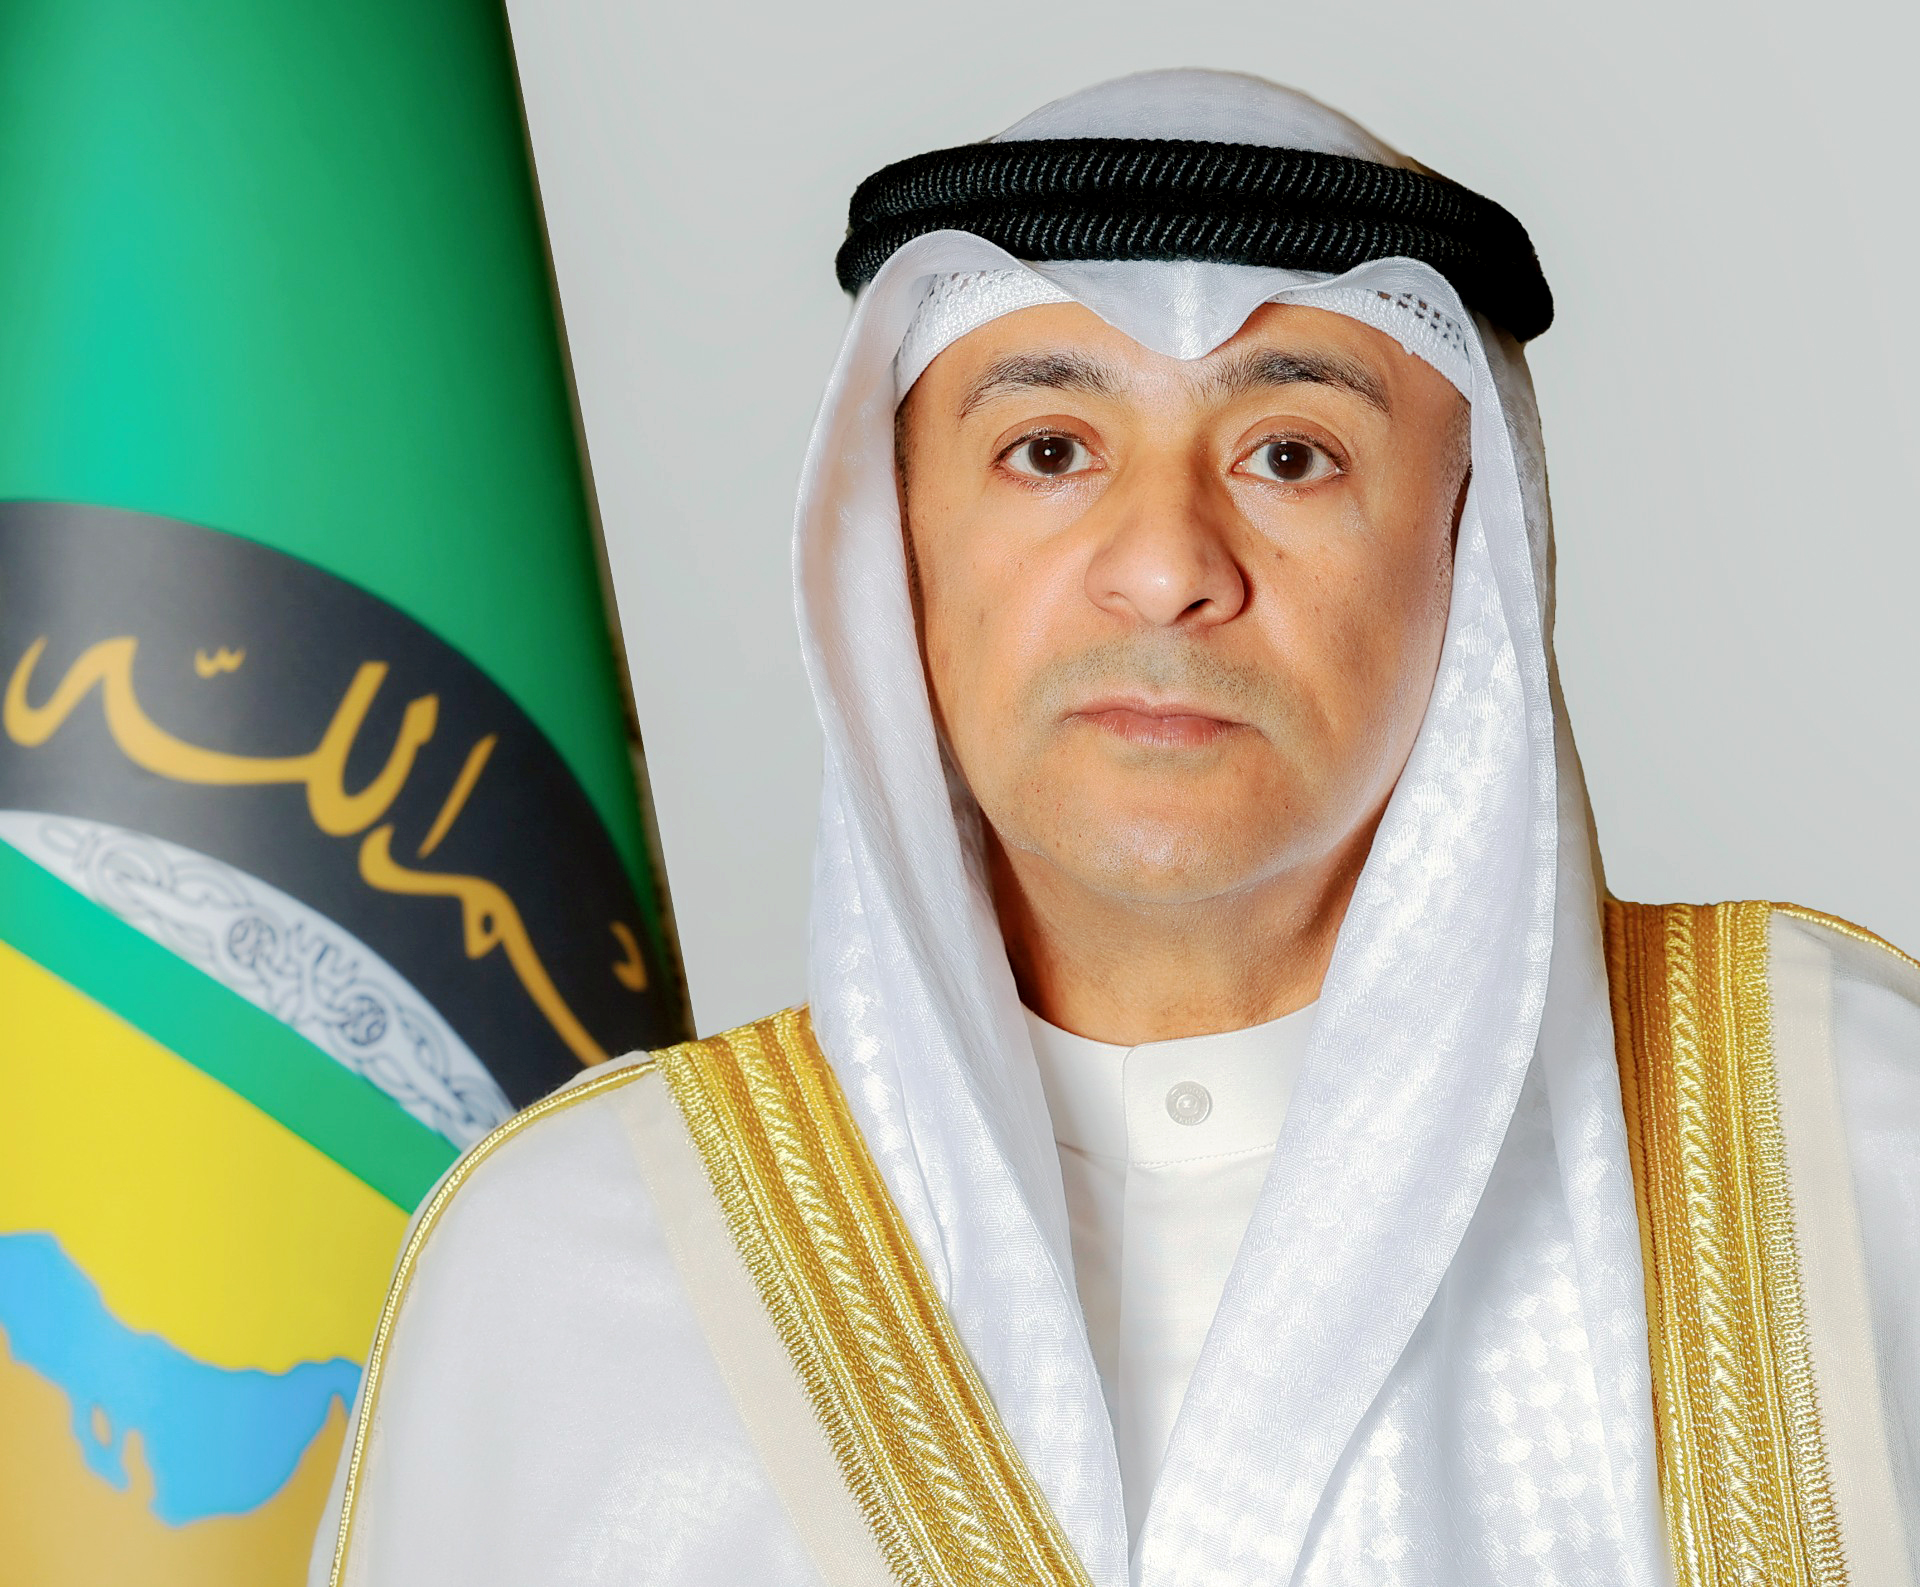 الأمين العام للتعاون الخليجي: دول المجلس تسعى بدأب لتعزيز التعاون الإسلامي                                                                                                                                                                                